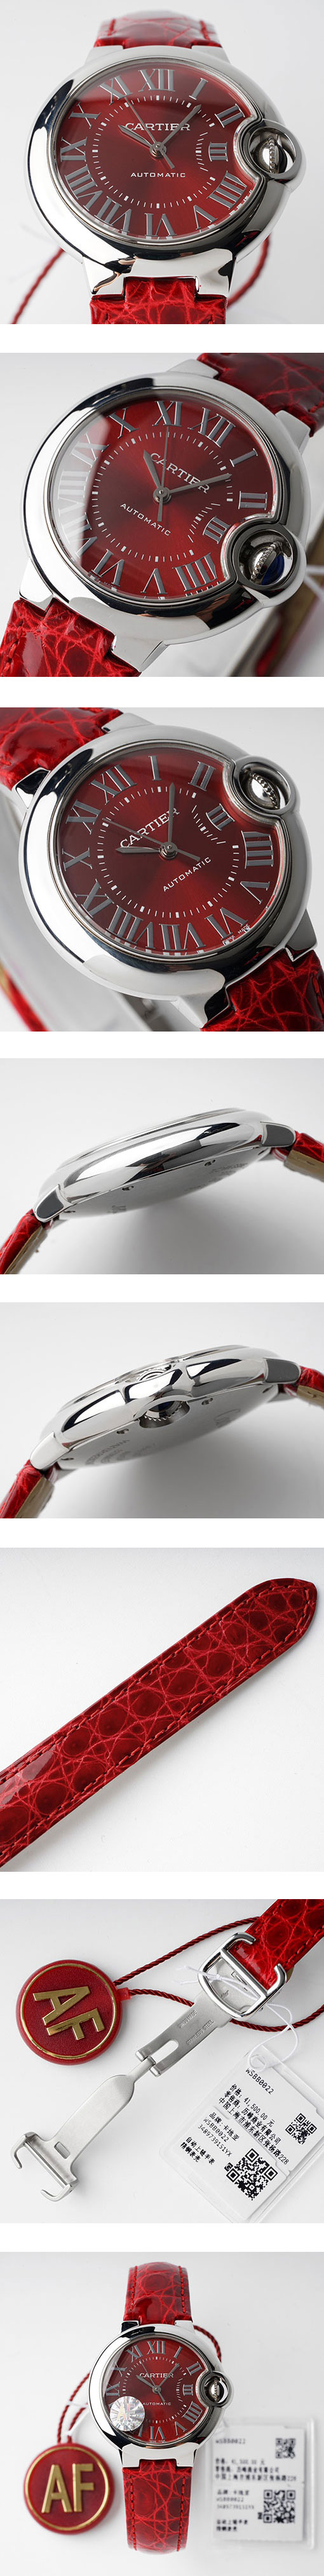 カルティエ腕時計コピーの販売 バロンブルーWSBB0022 レッド 自動巻き